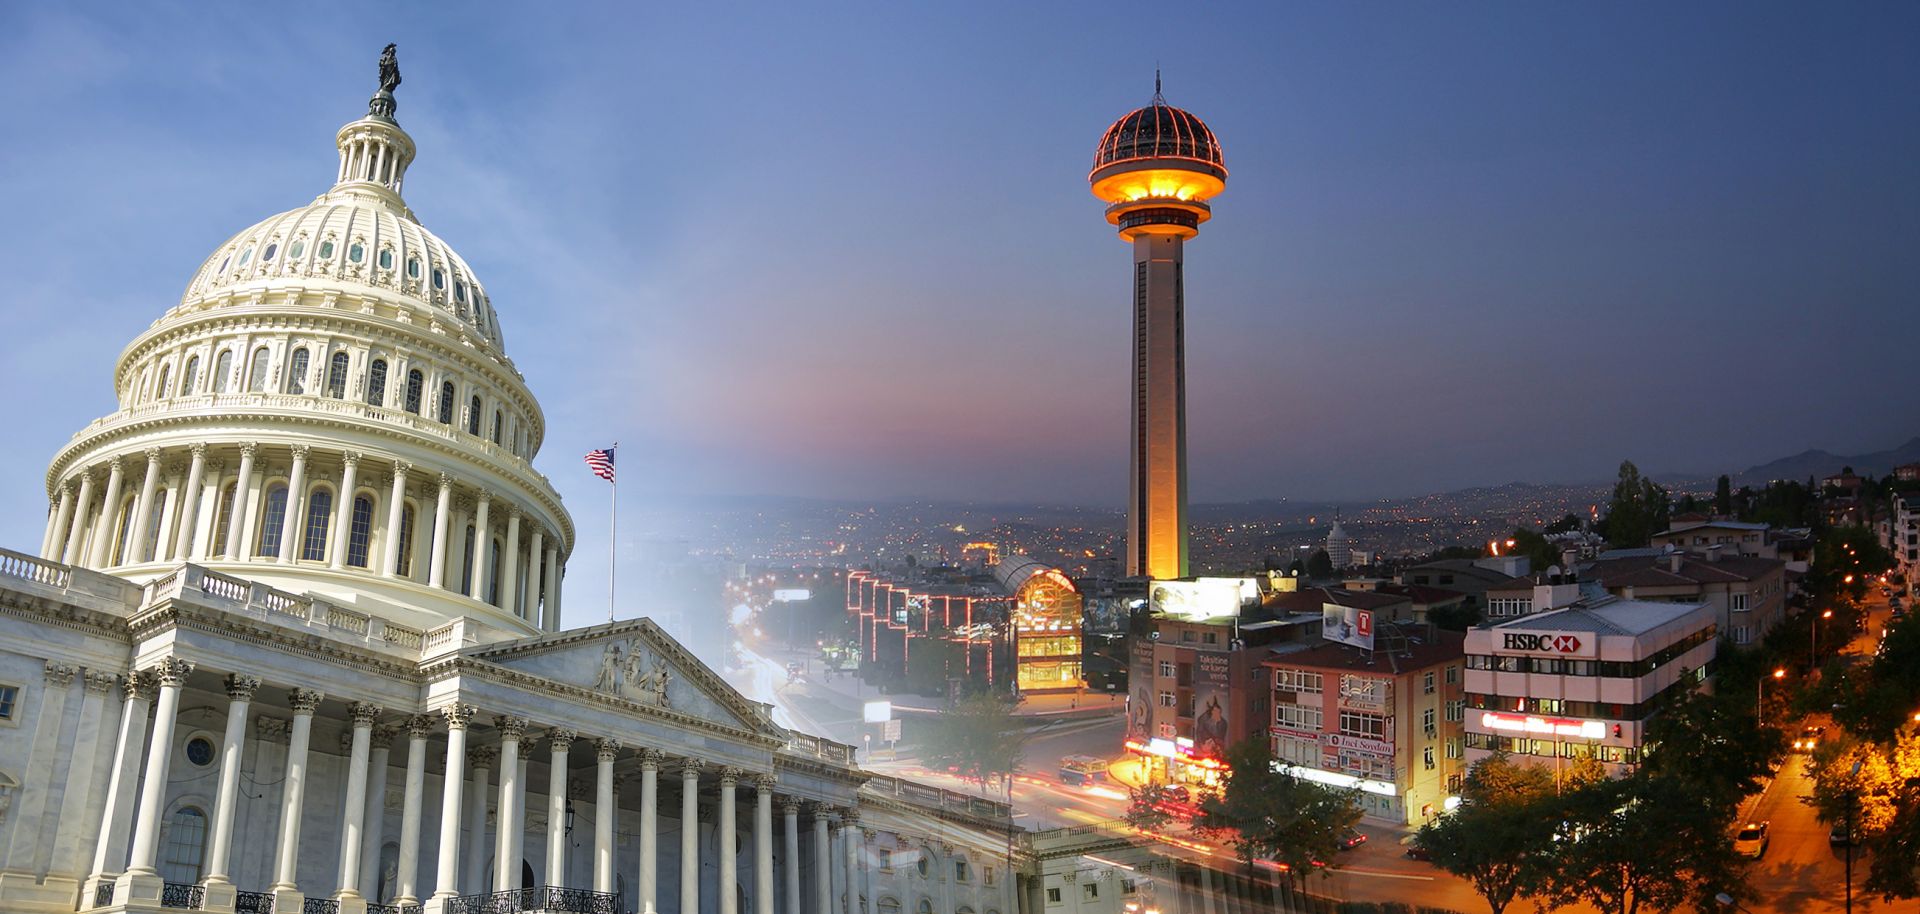 Washington D.C. and Ankara, Turkey